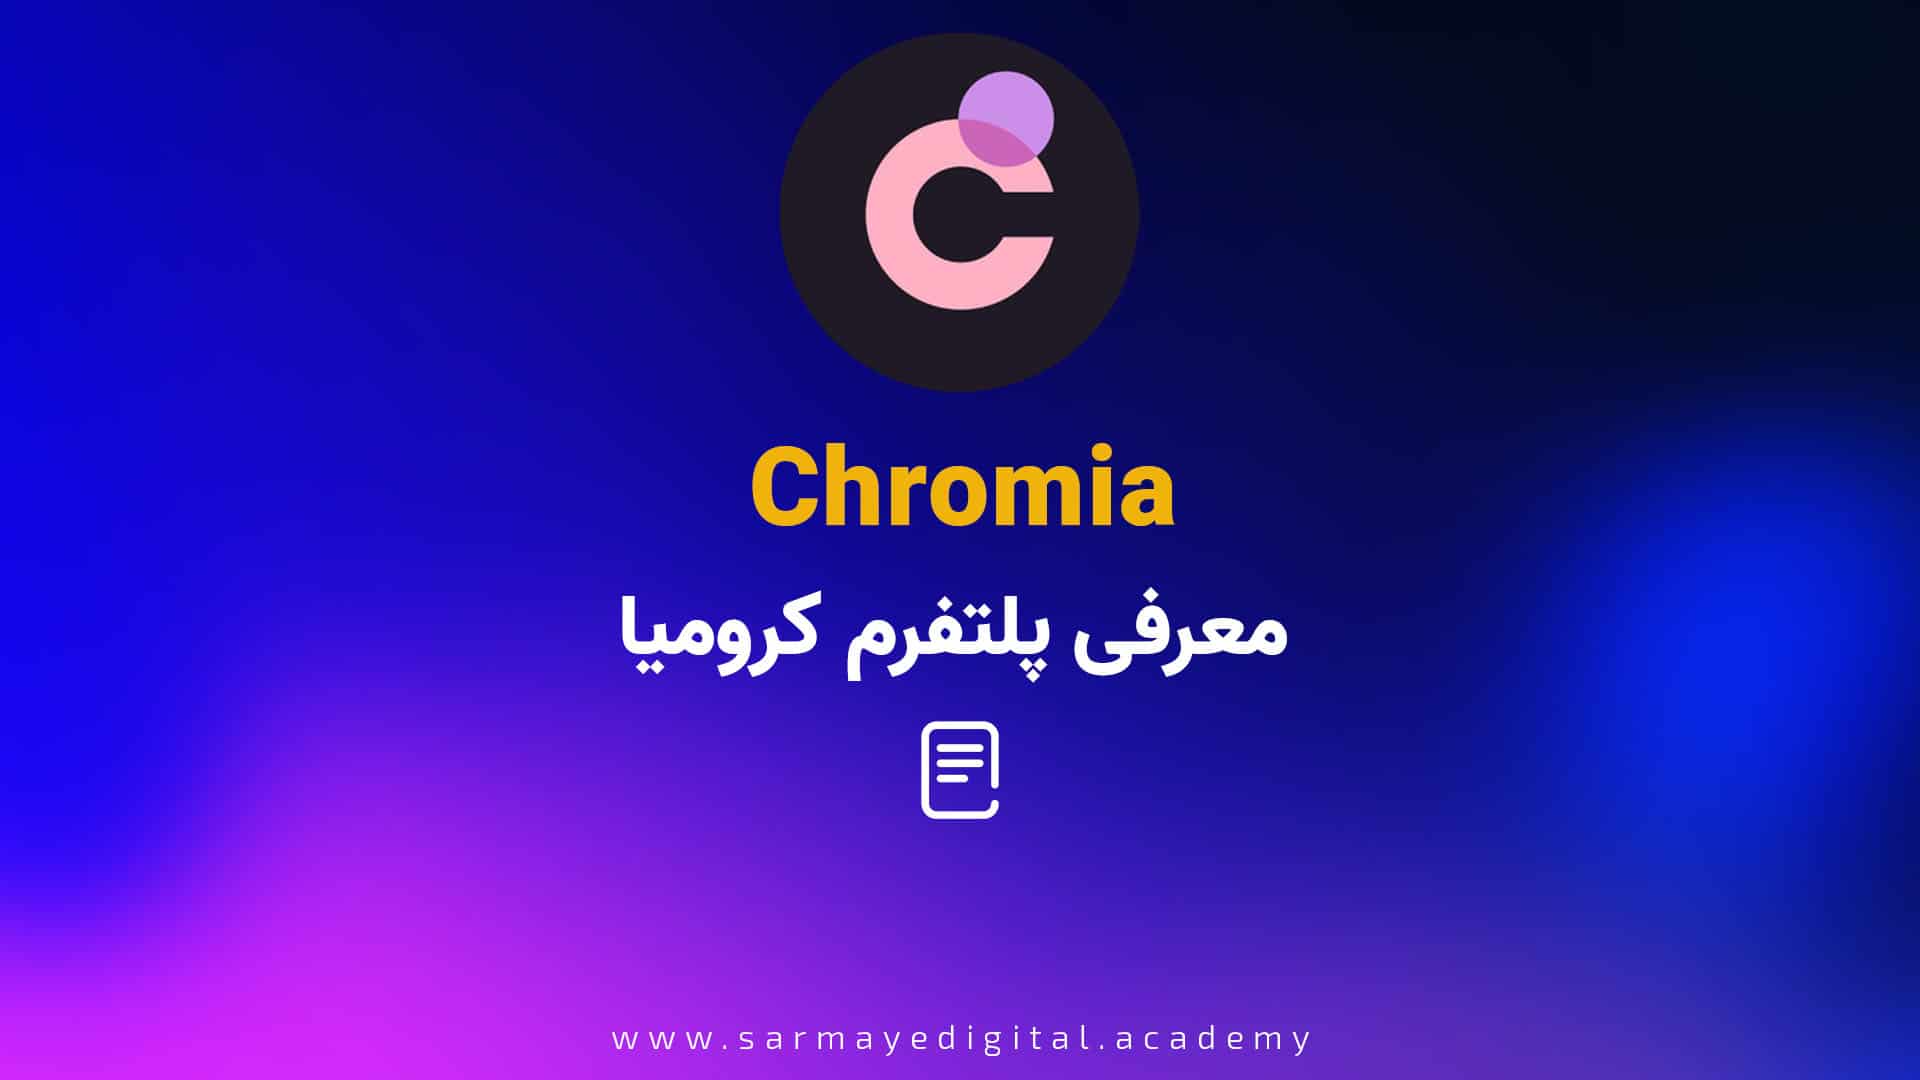 ارز کرومیا (Chromia)